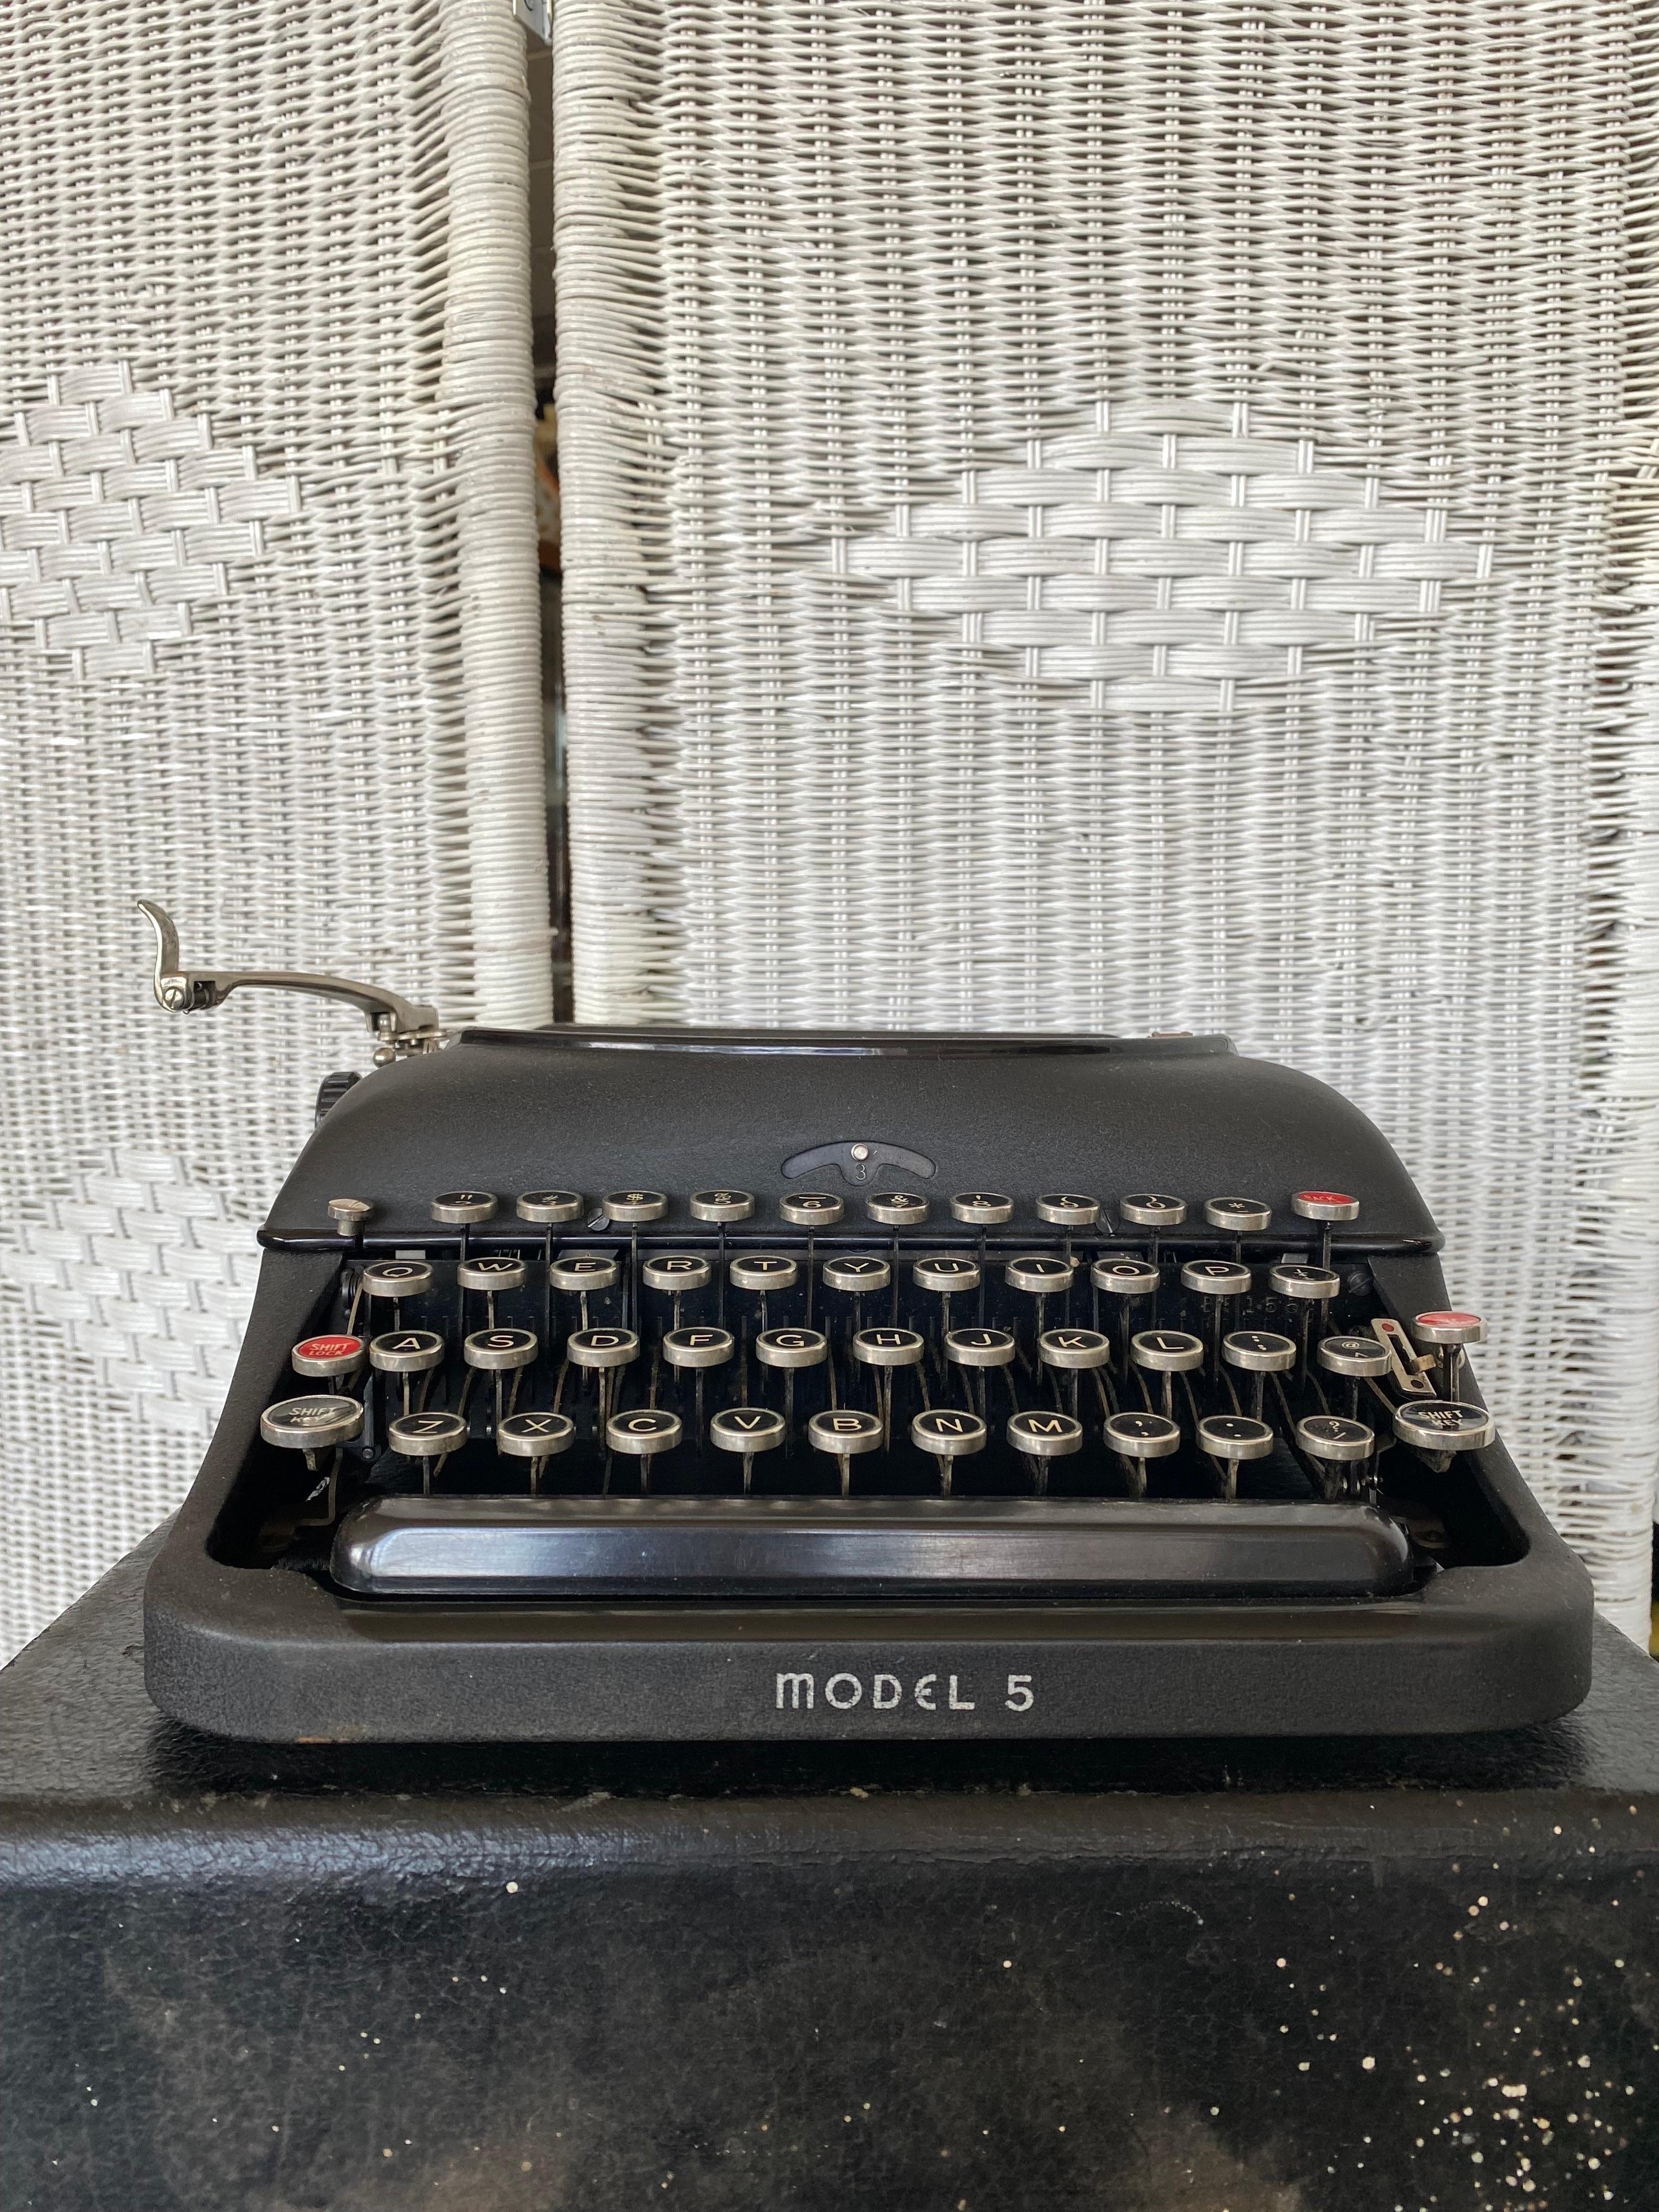 remington 5 typewriter